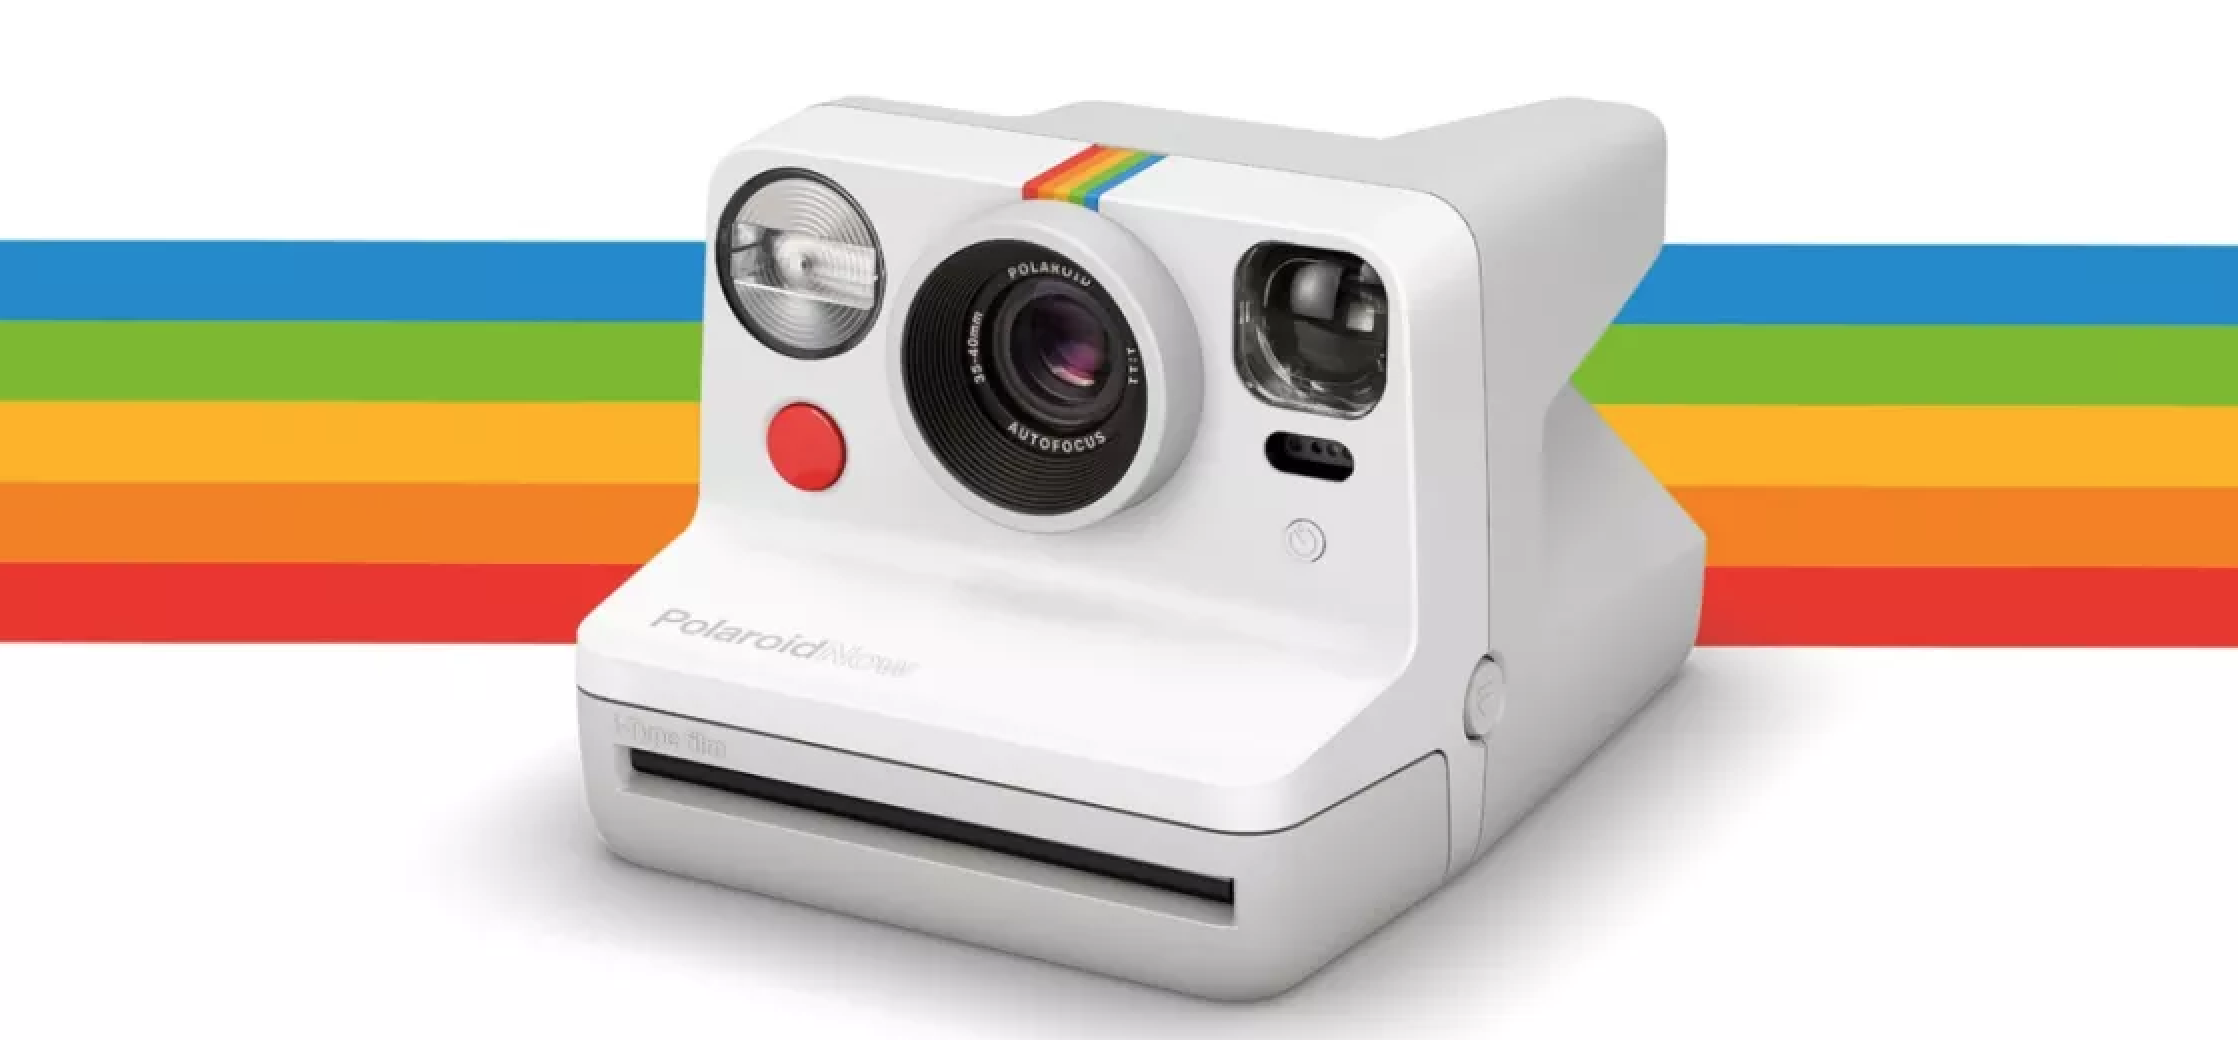 11234 - La fotocamera Polaroid più piccola del mondo è qui, ami ancora le Polaroid?